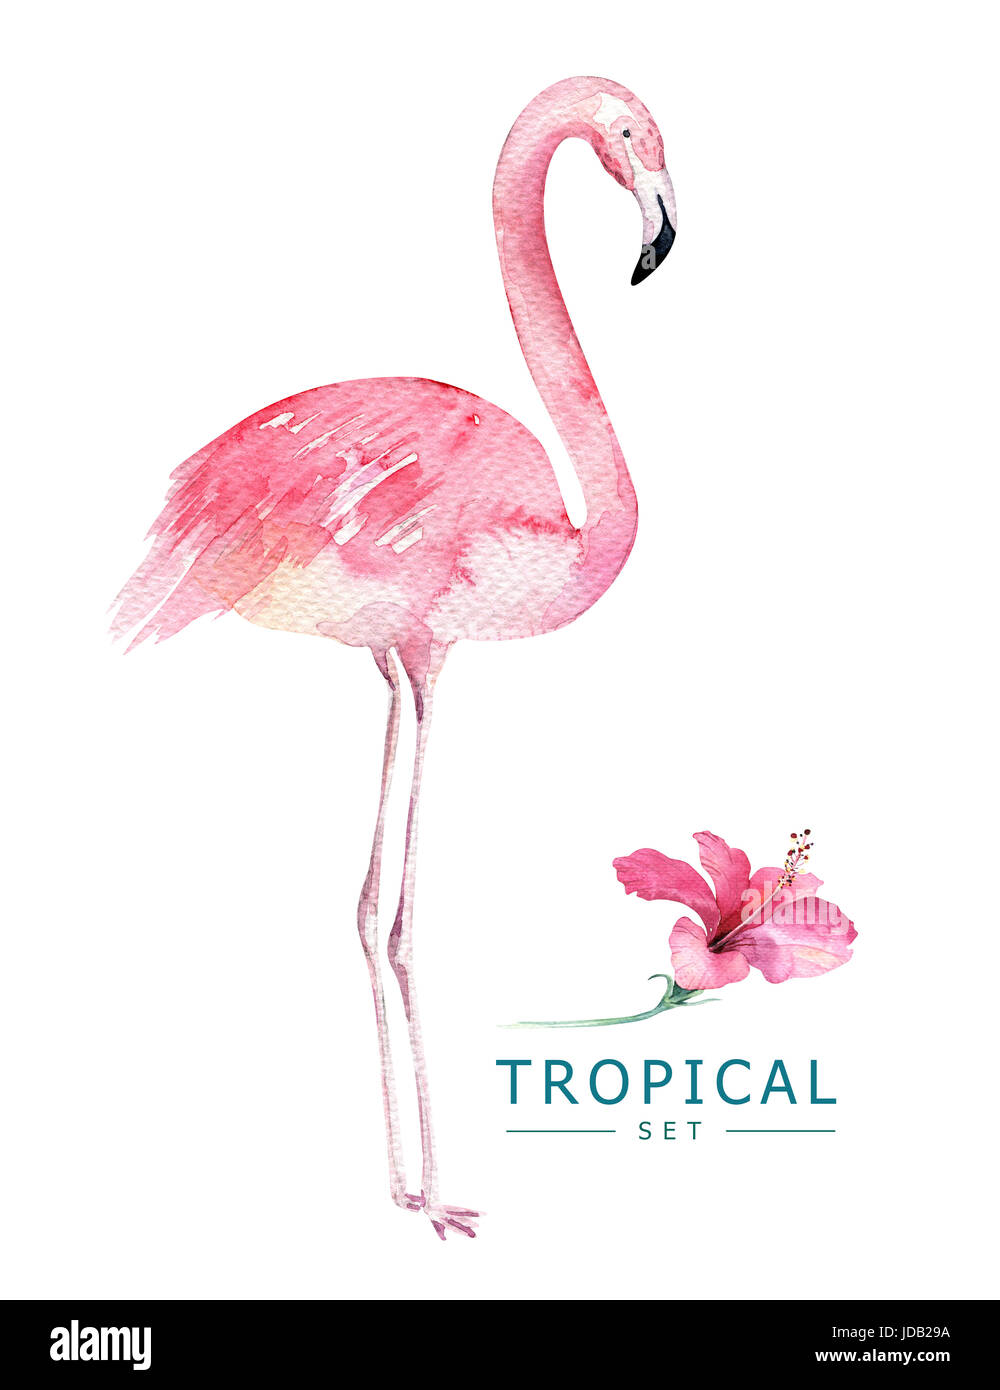 Aquarelle oiseaux tropicaux à la main ensemble de Flamingo. Les illustrations d'oiseaux exotiques rose, arbre de la jungle, le Brésil trendy art. parfait pour le motif du tissu. Aloha Banque D'Images